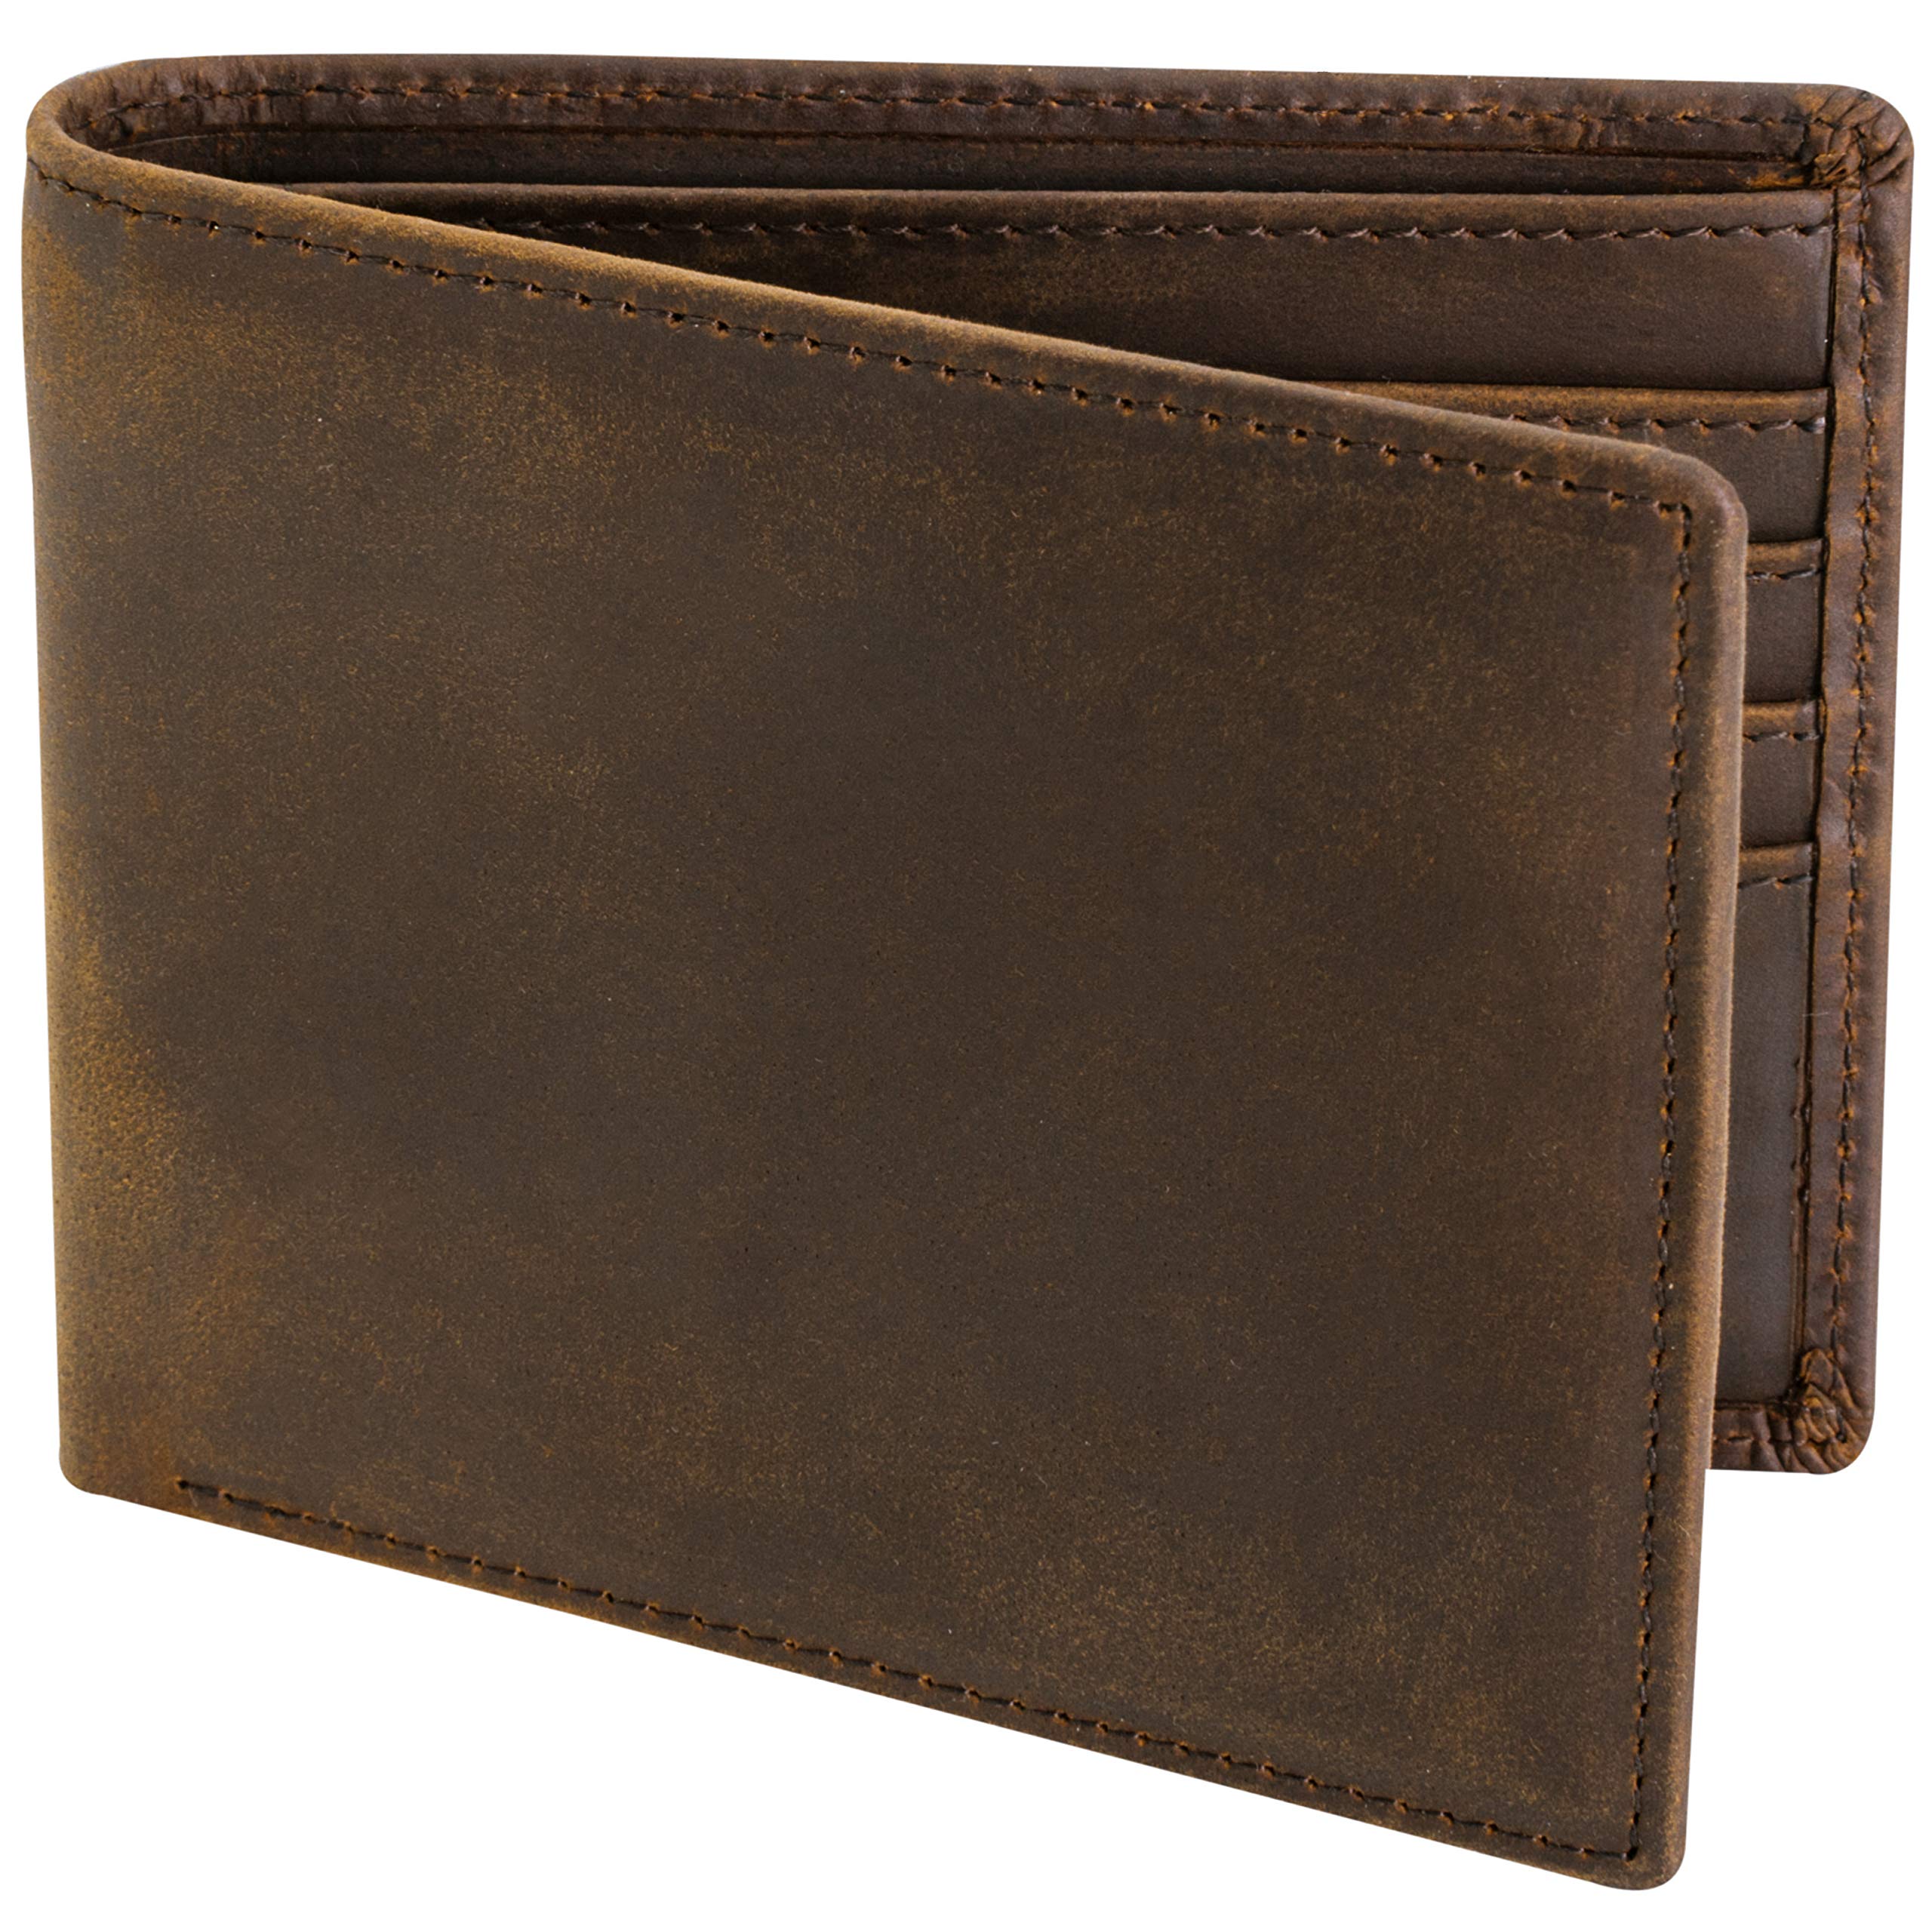 wallet men leather luxury men wallets leather genuine